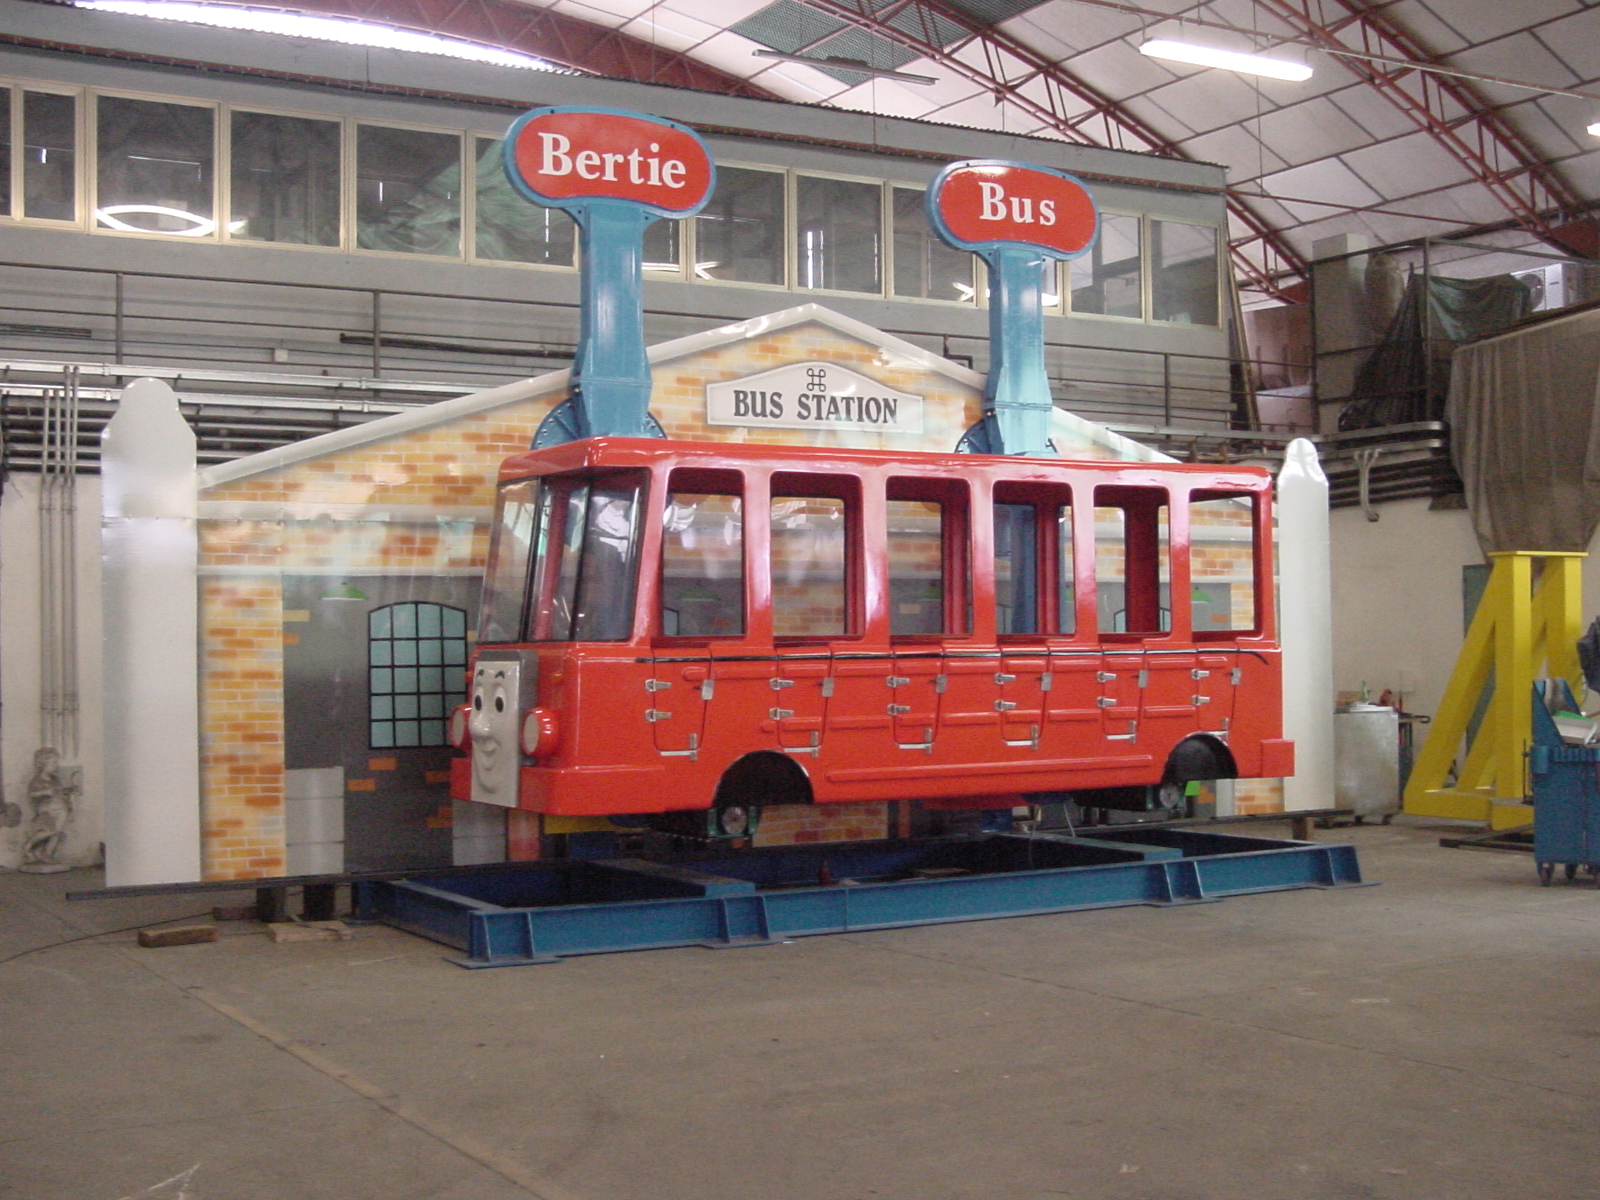 Crazy Bus - I.E. Park